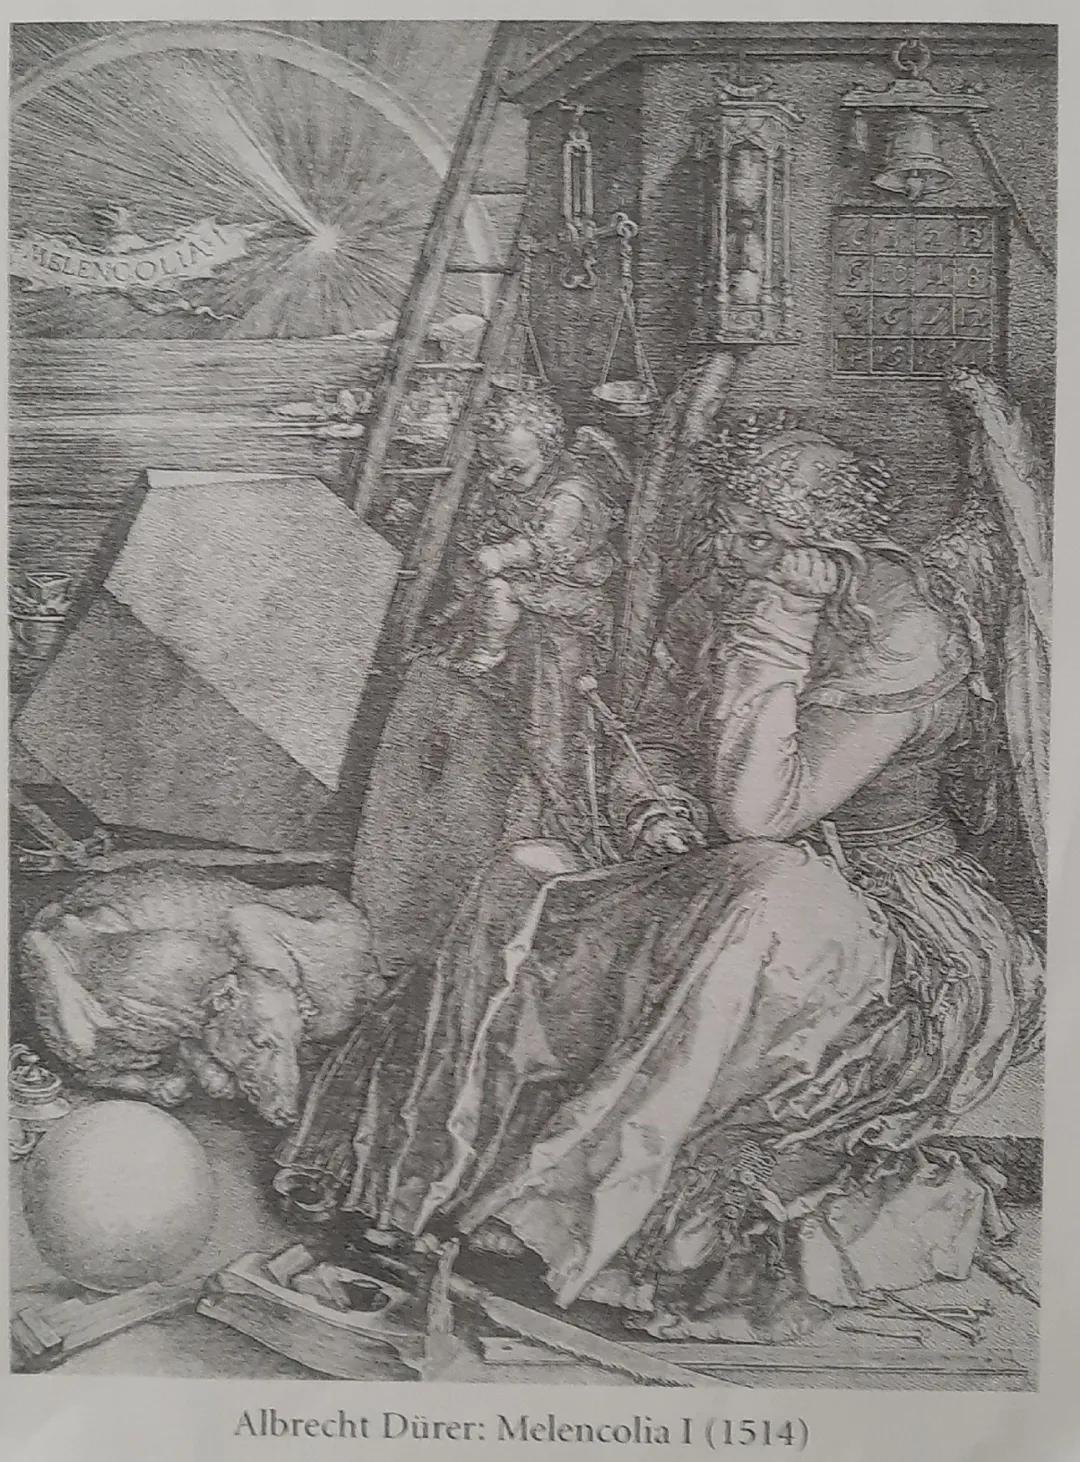 Albrecht Dürer: Melencolia I (1514) Albrecht Dürer: Melenconia (1514)
-depressiv Hraung
- unordentlich /chaos
- Kind/Helferchern
Goethe Faus